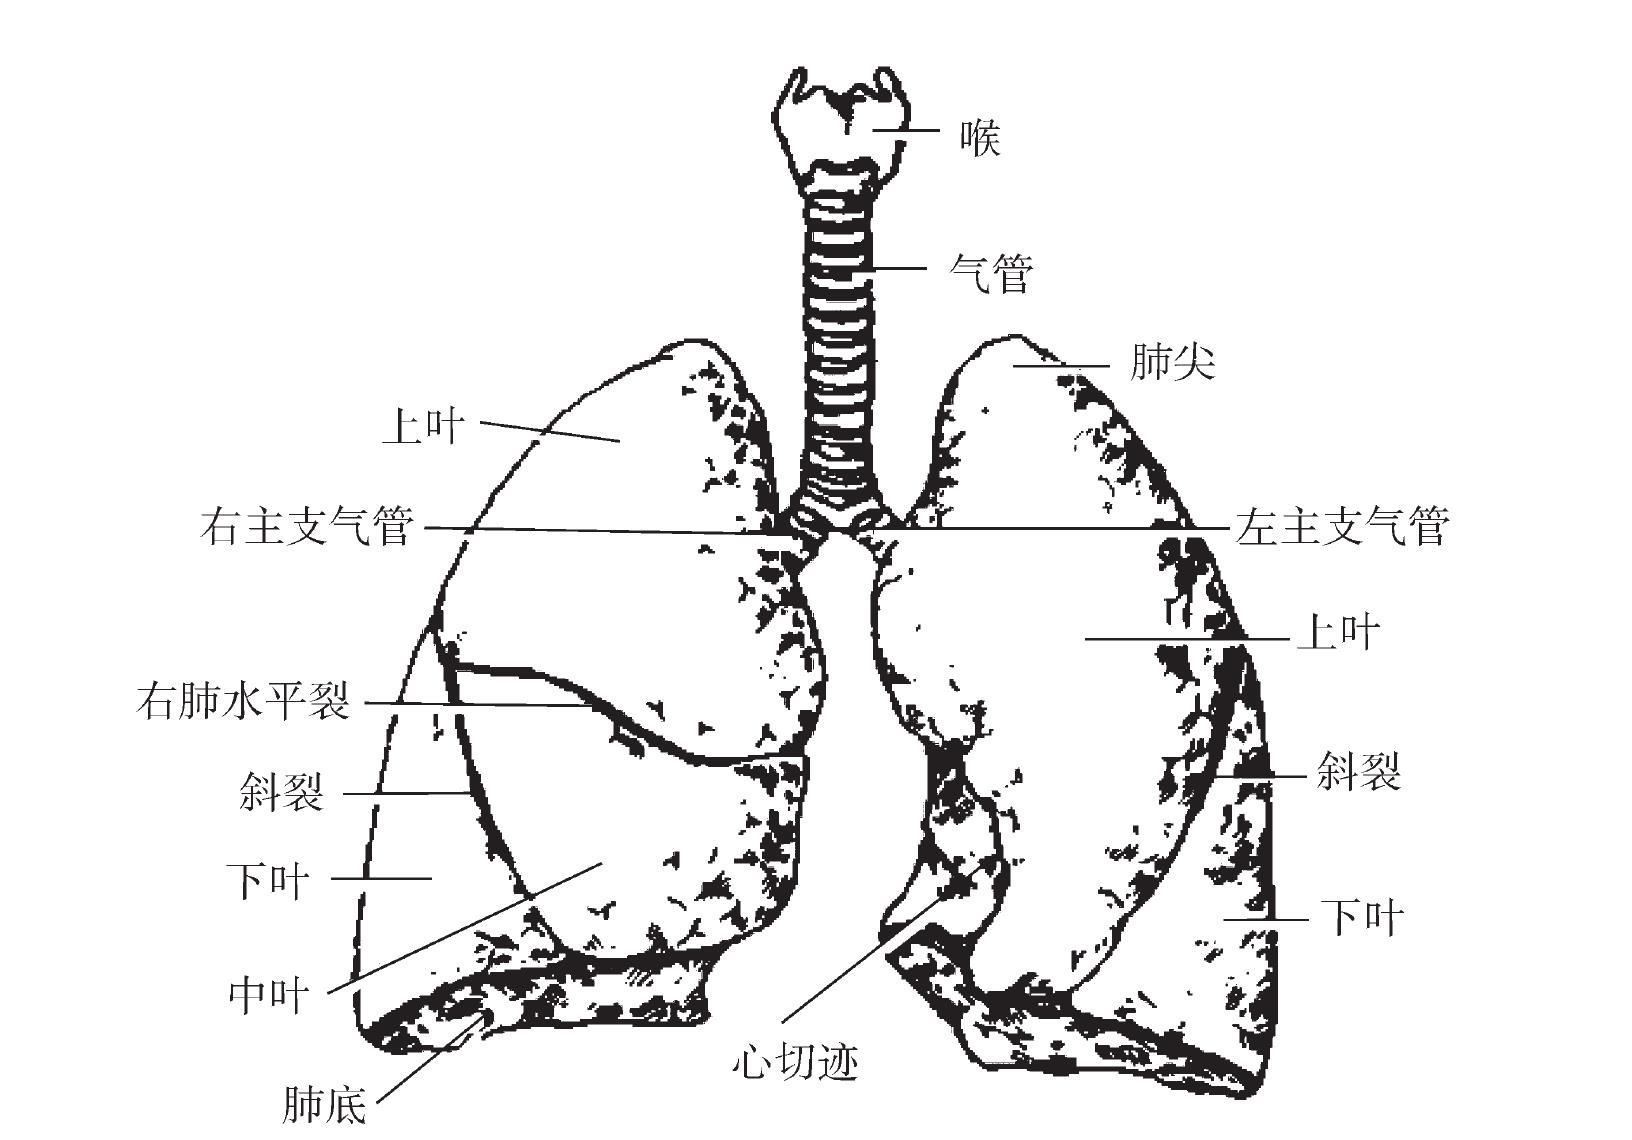 一、肺形态及分叶